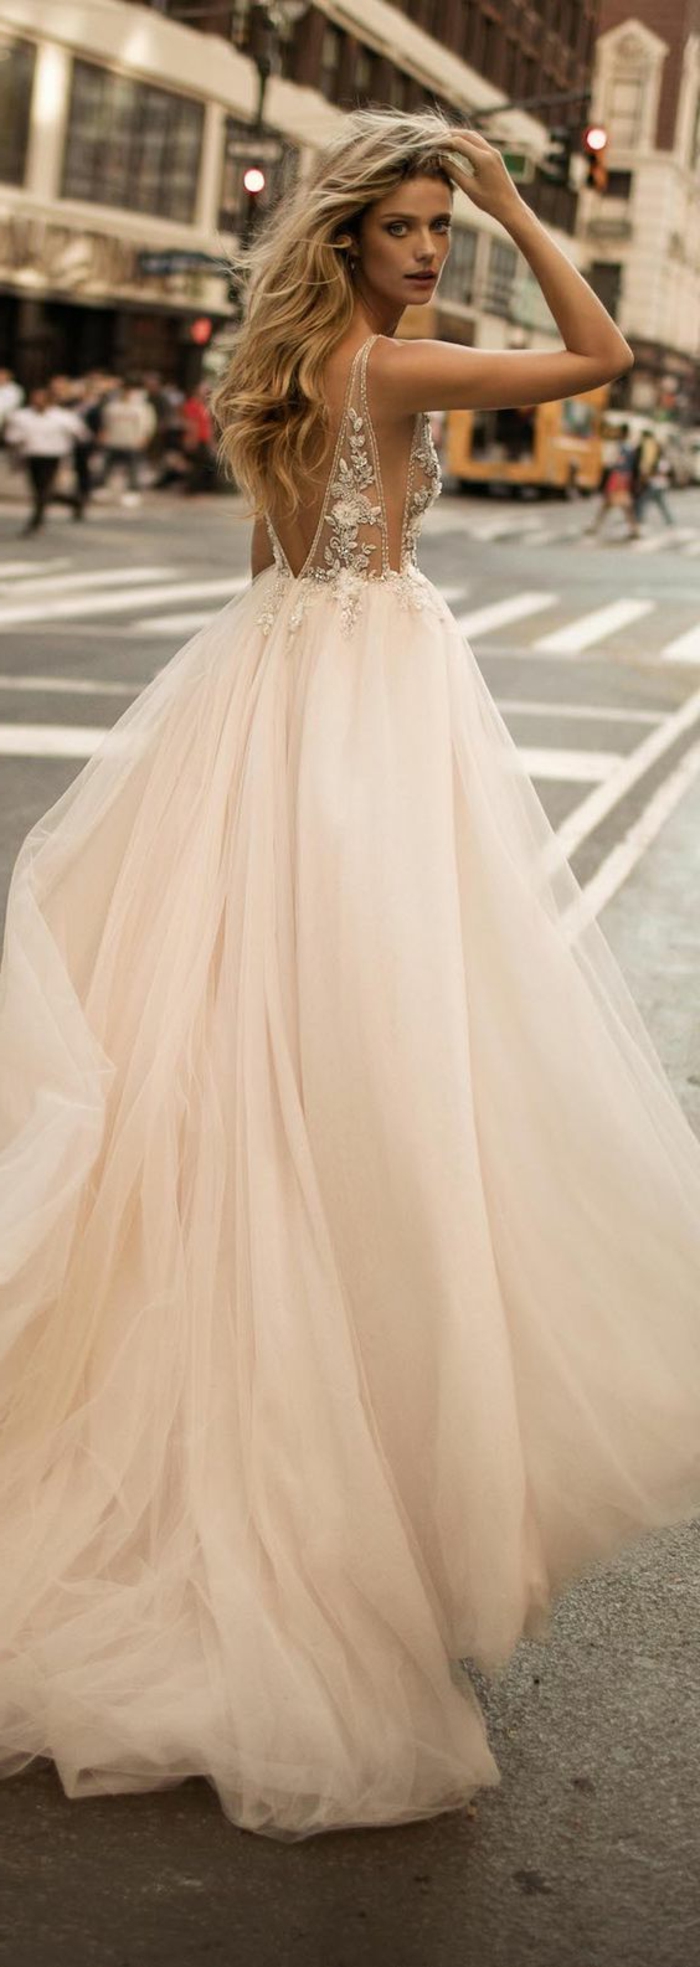 robes pour mariage en couleur crème ivoire avec buste en cristaux Swarowski Berta Bridal